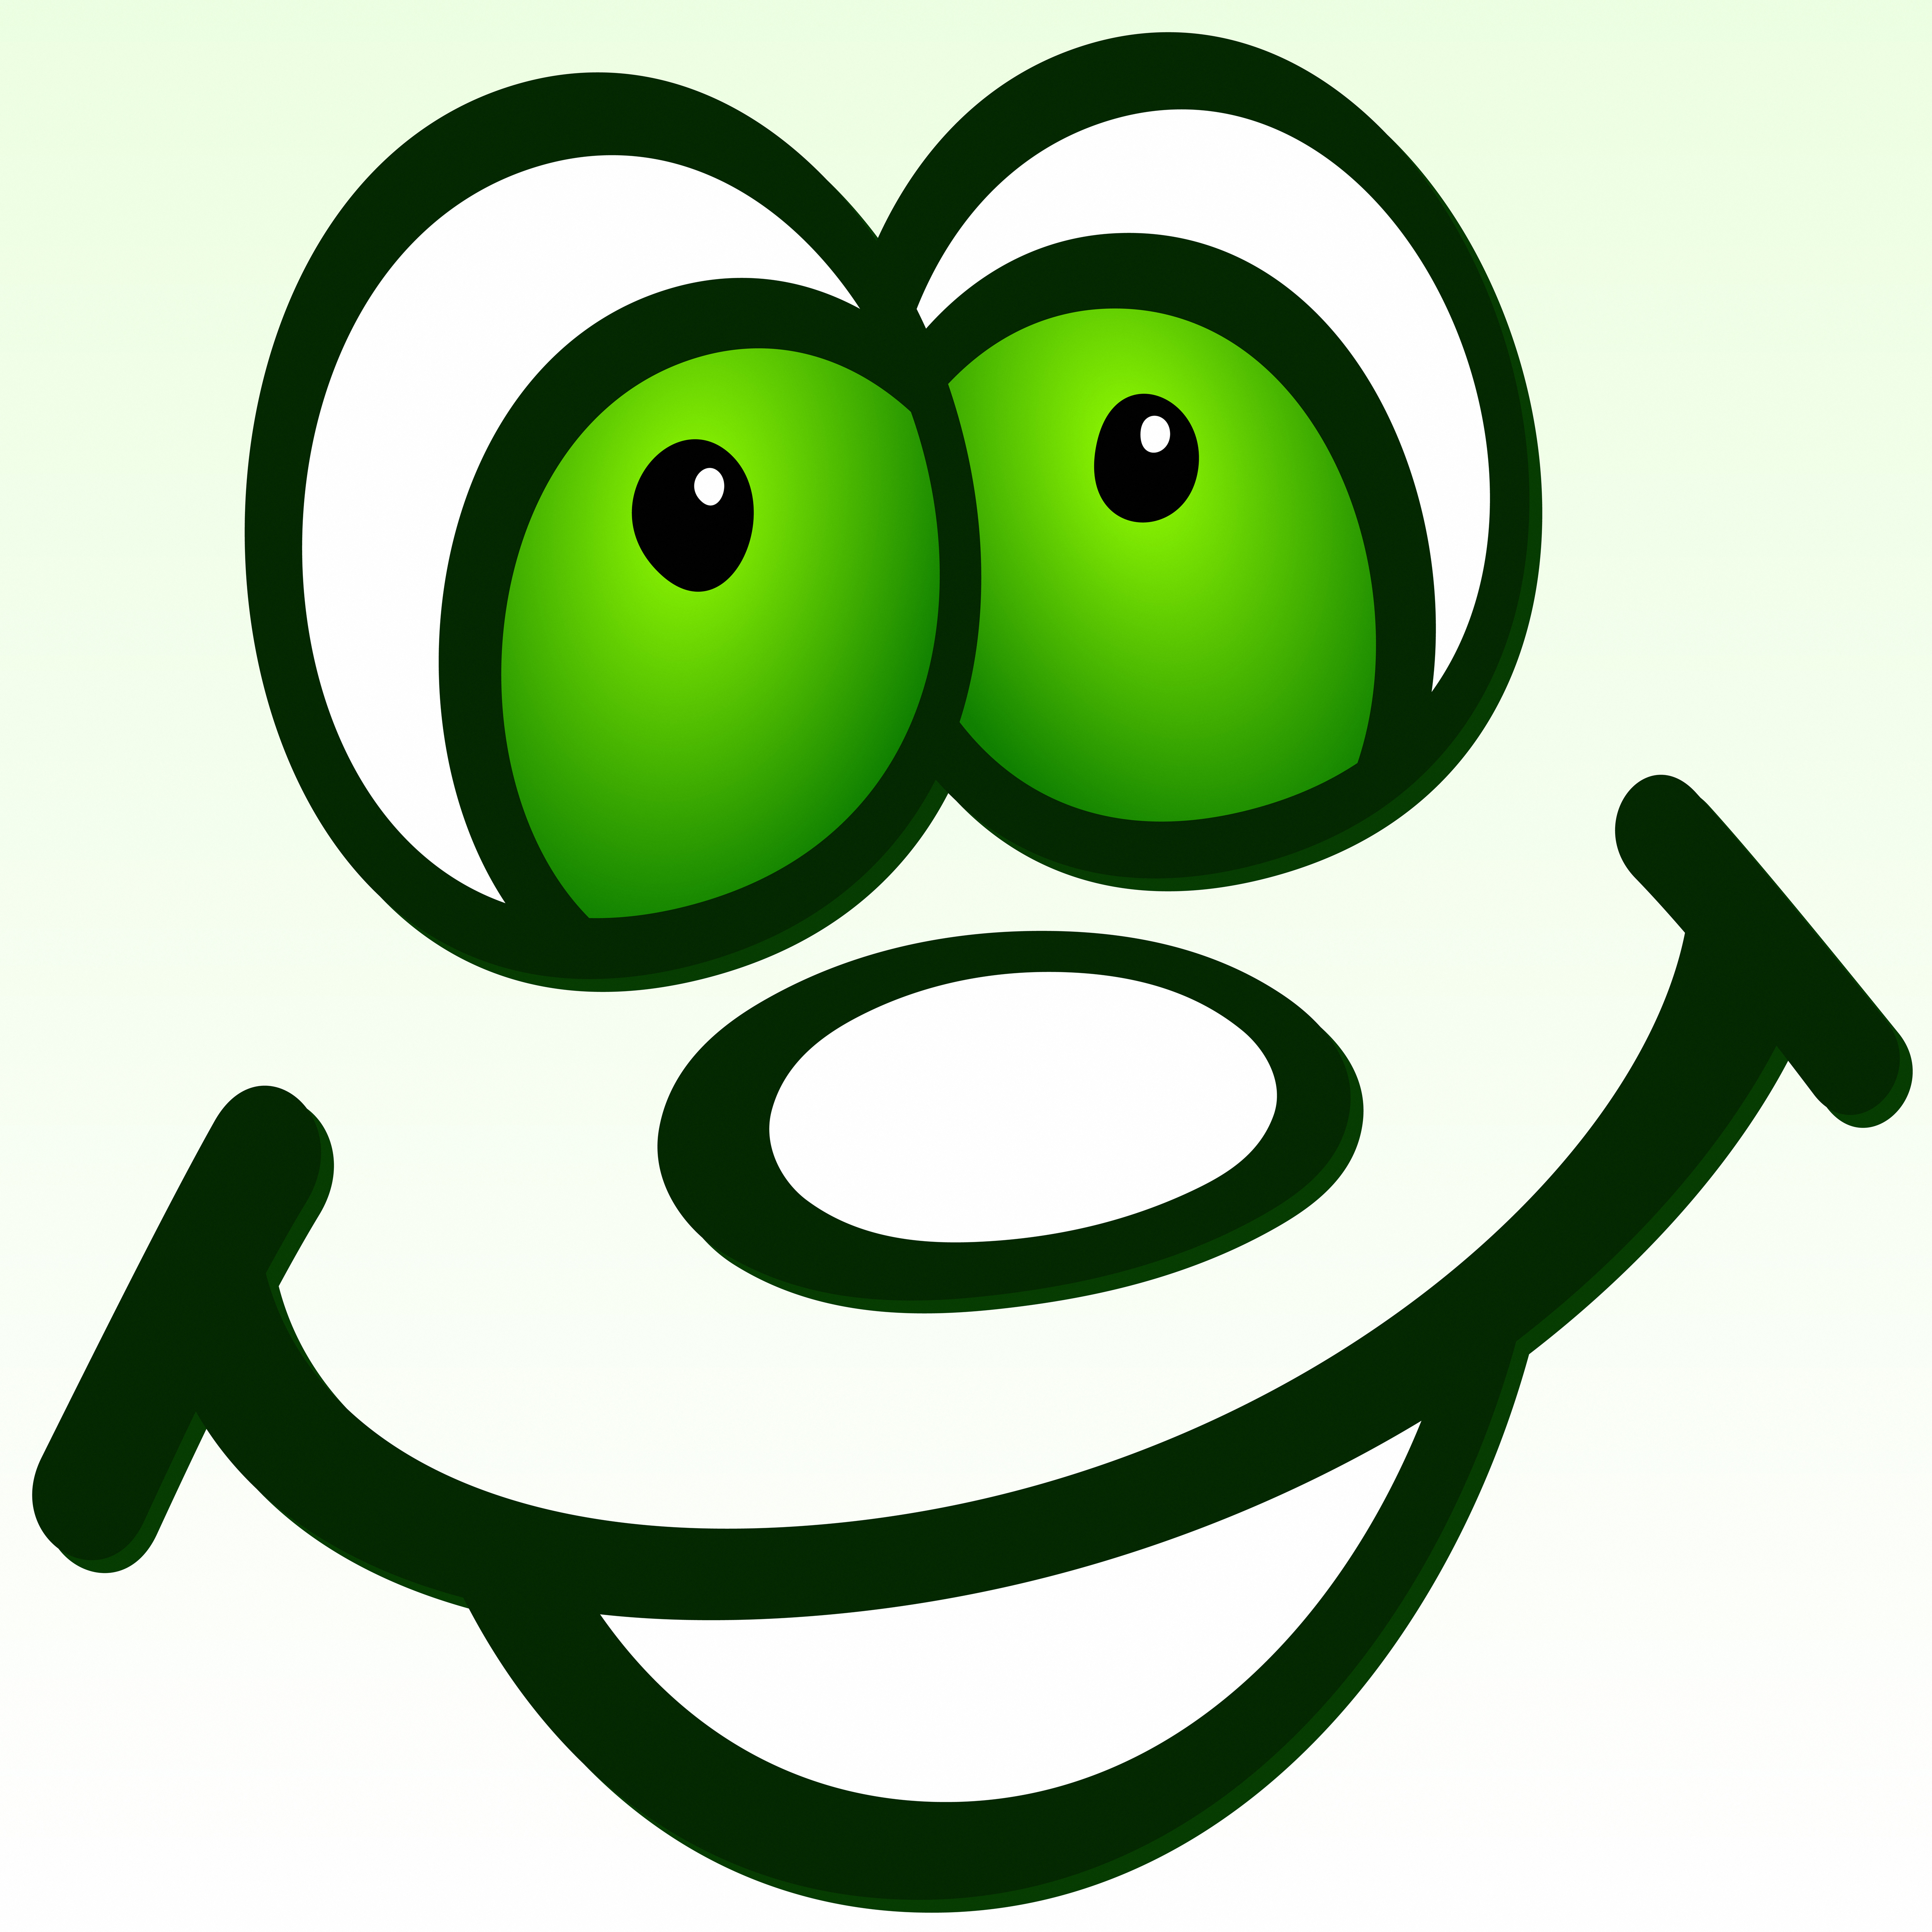 File:Alfie, comic cutie with big green eyes, help someone smile.jpg ...